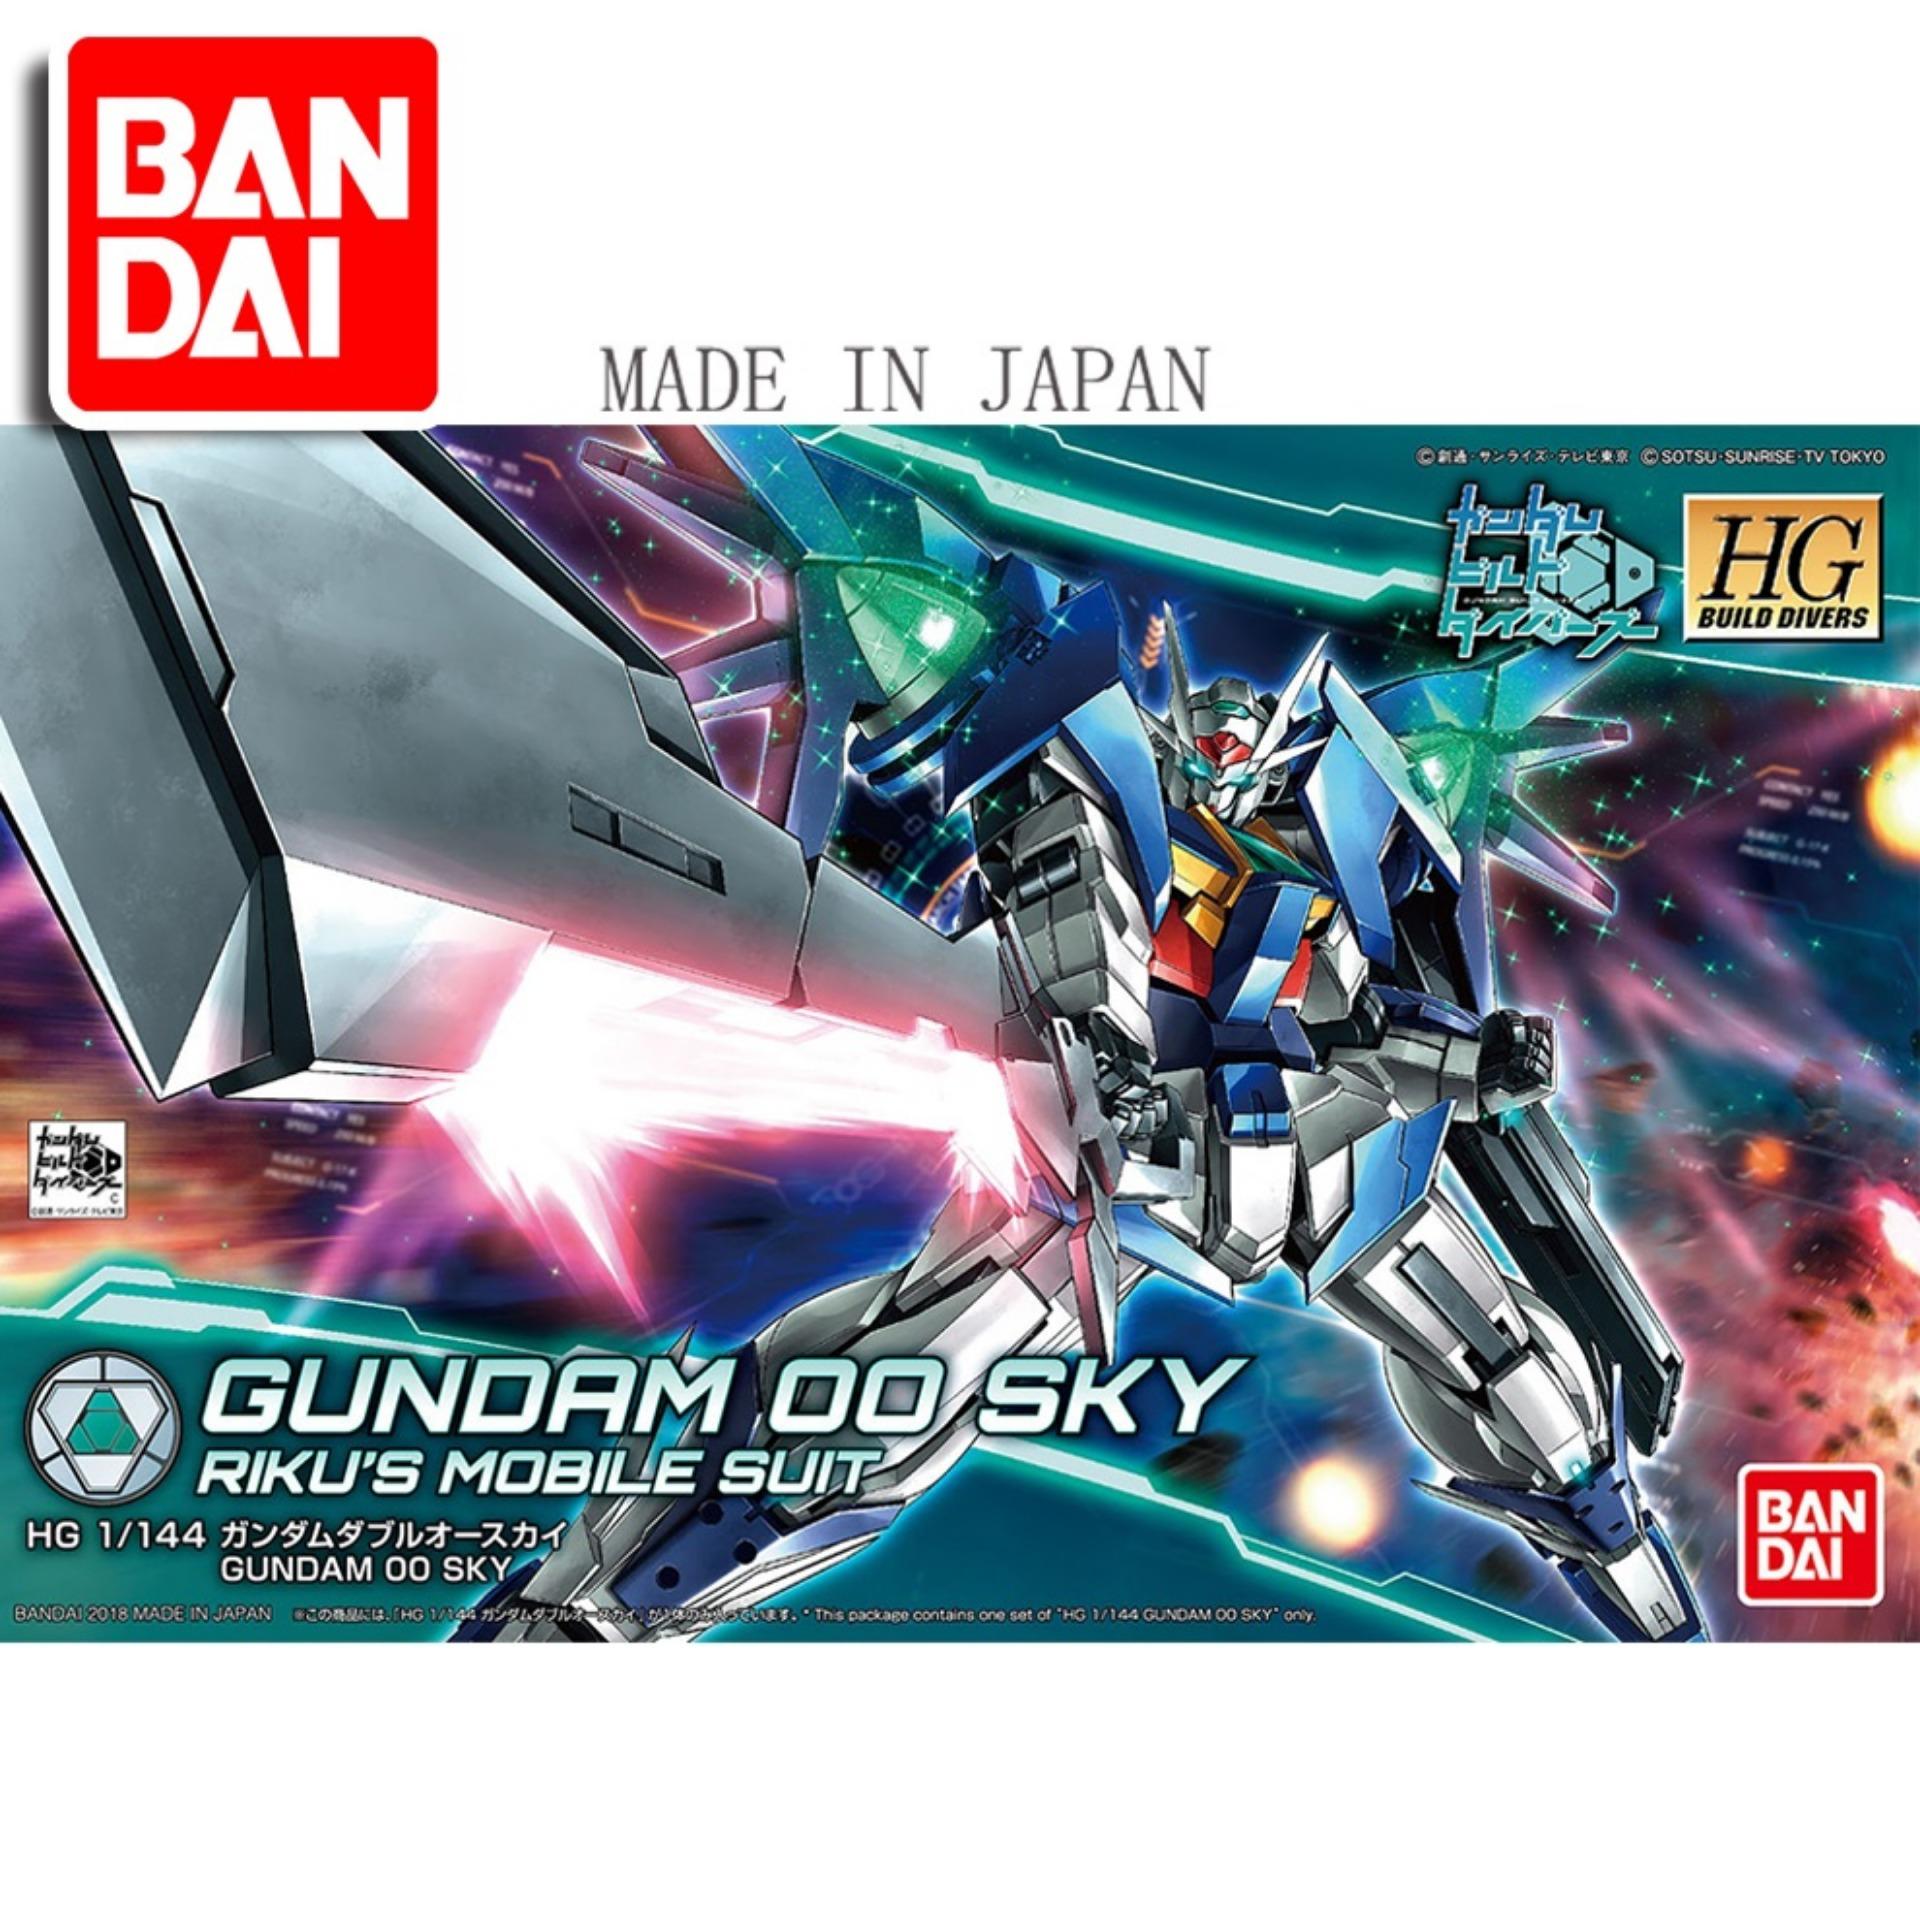 Mô hình Gundam Bandai 1/144 HGBD Gundam 00 Sky Serie HG Build Divers